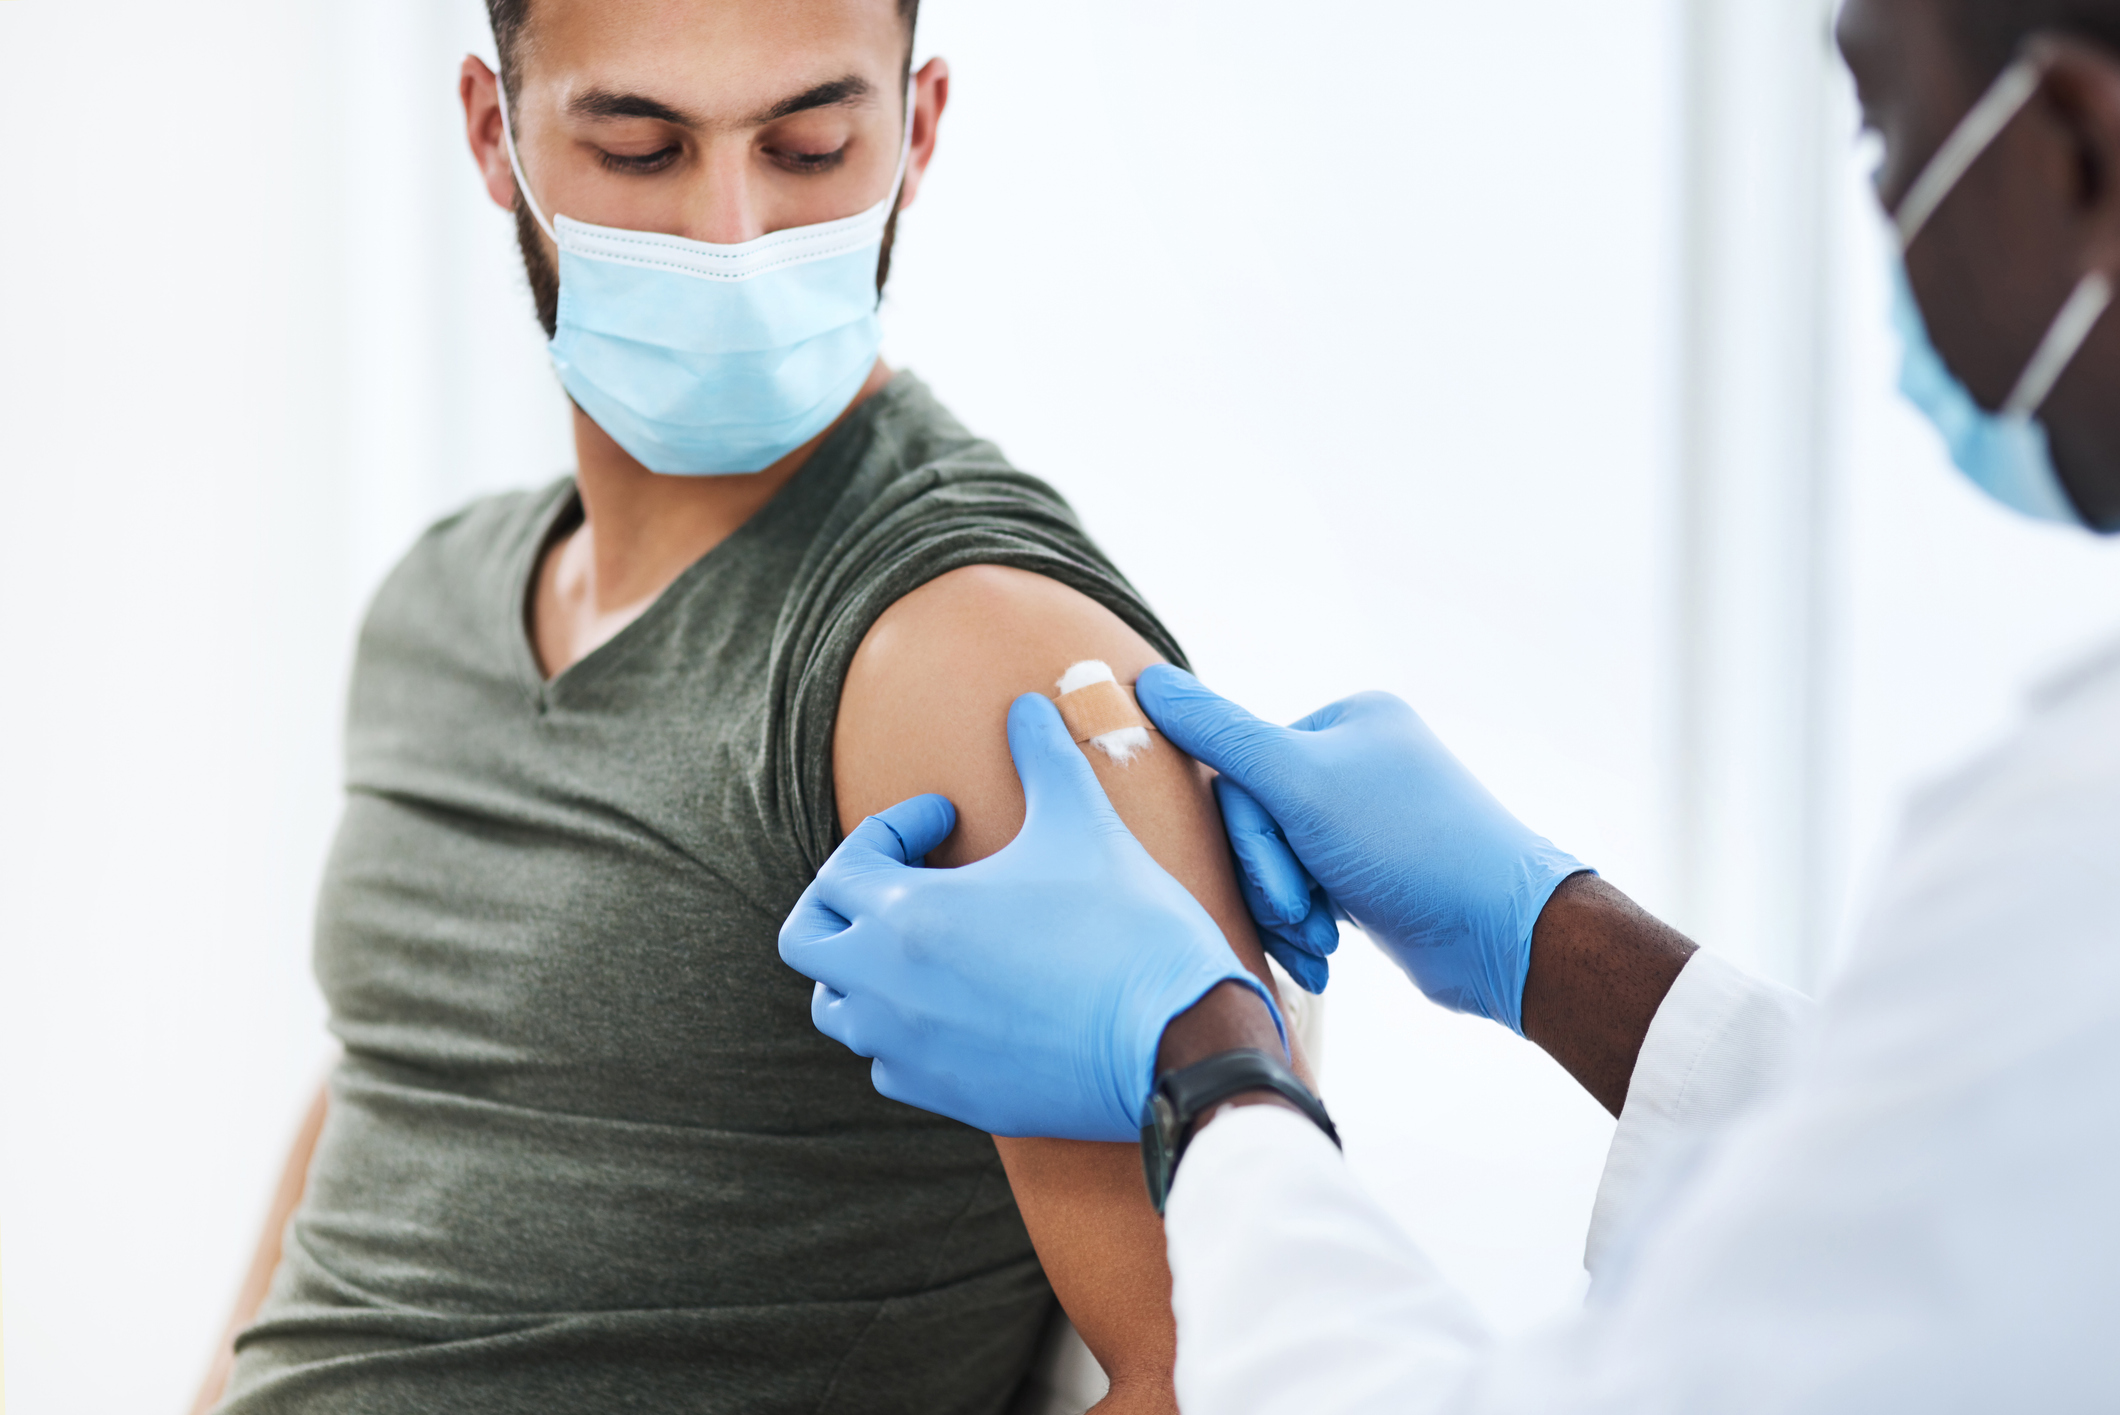 Imagen de un médico colocando un apósito después de inyectar a un paciente en su brazo durante una consulta en una clínica